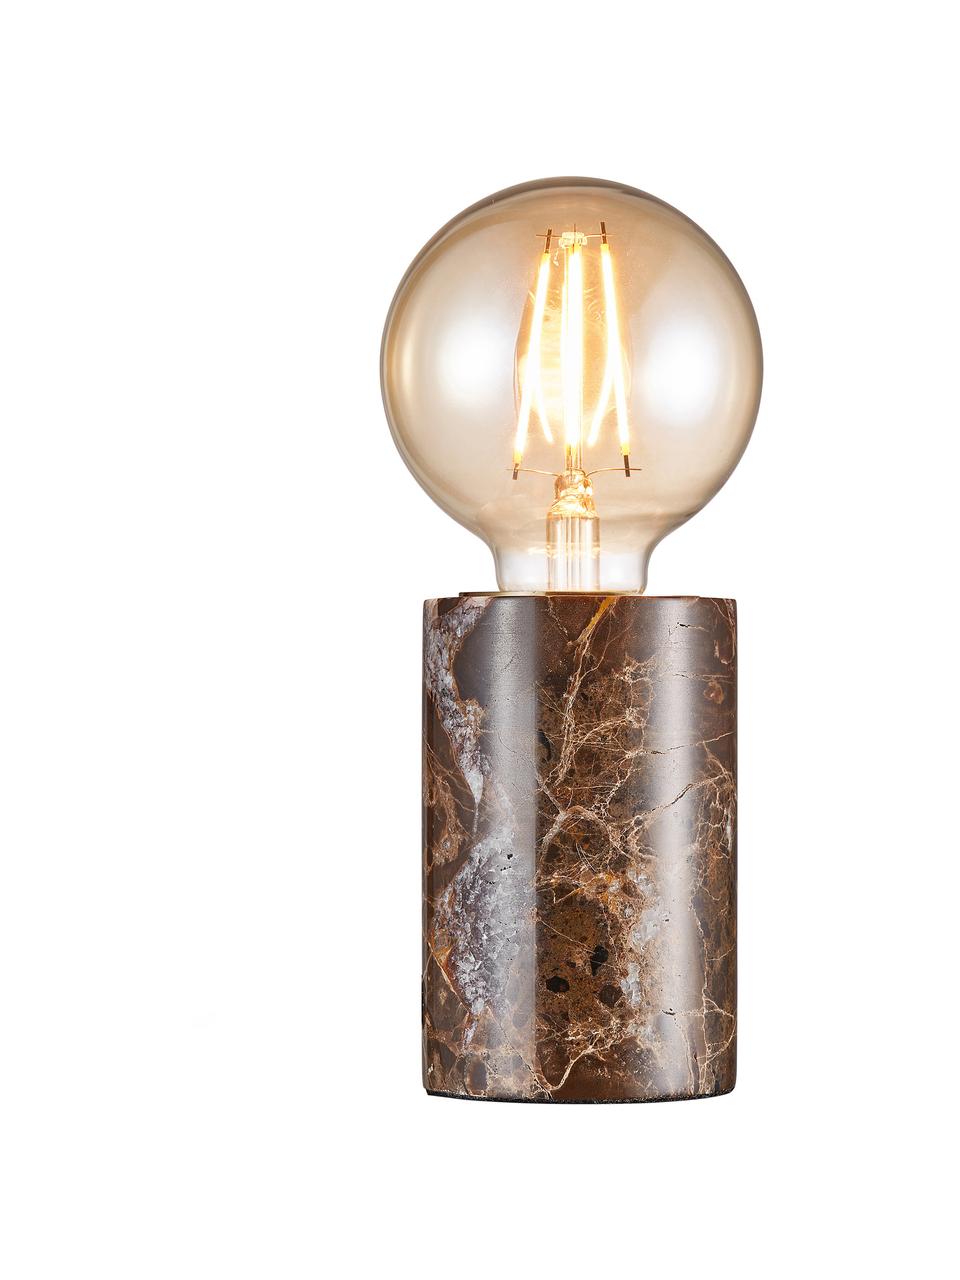 Lámpara de mesa pequeña de mármol Siv, Cable: cubierto en tela, Mármol marrón, Ø 6 x Al 10 cm